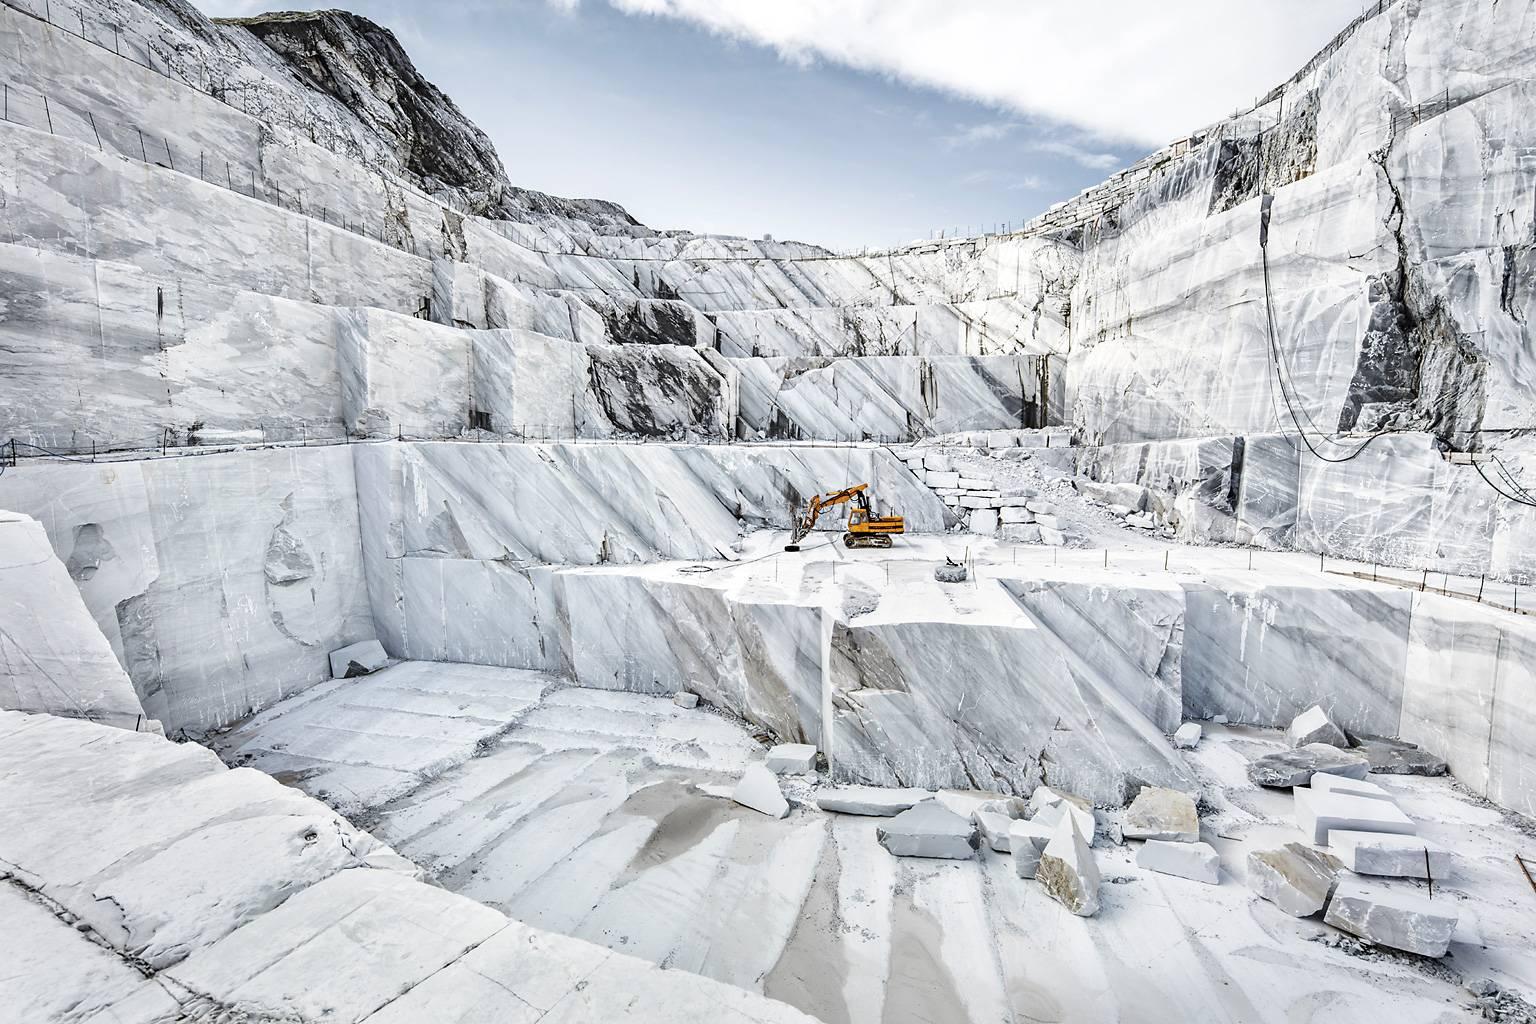 Marmo di Carrara – Großformatfotografie eines ikonischen italienischen Marmorbruchs